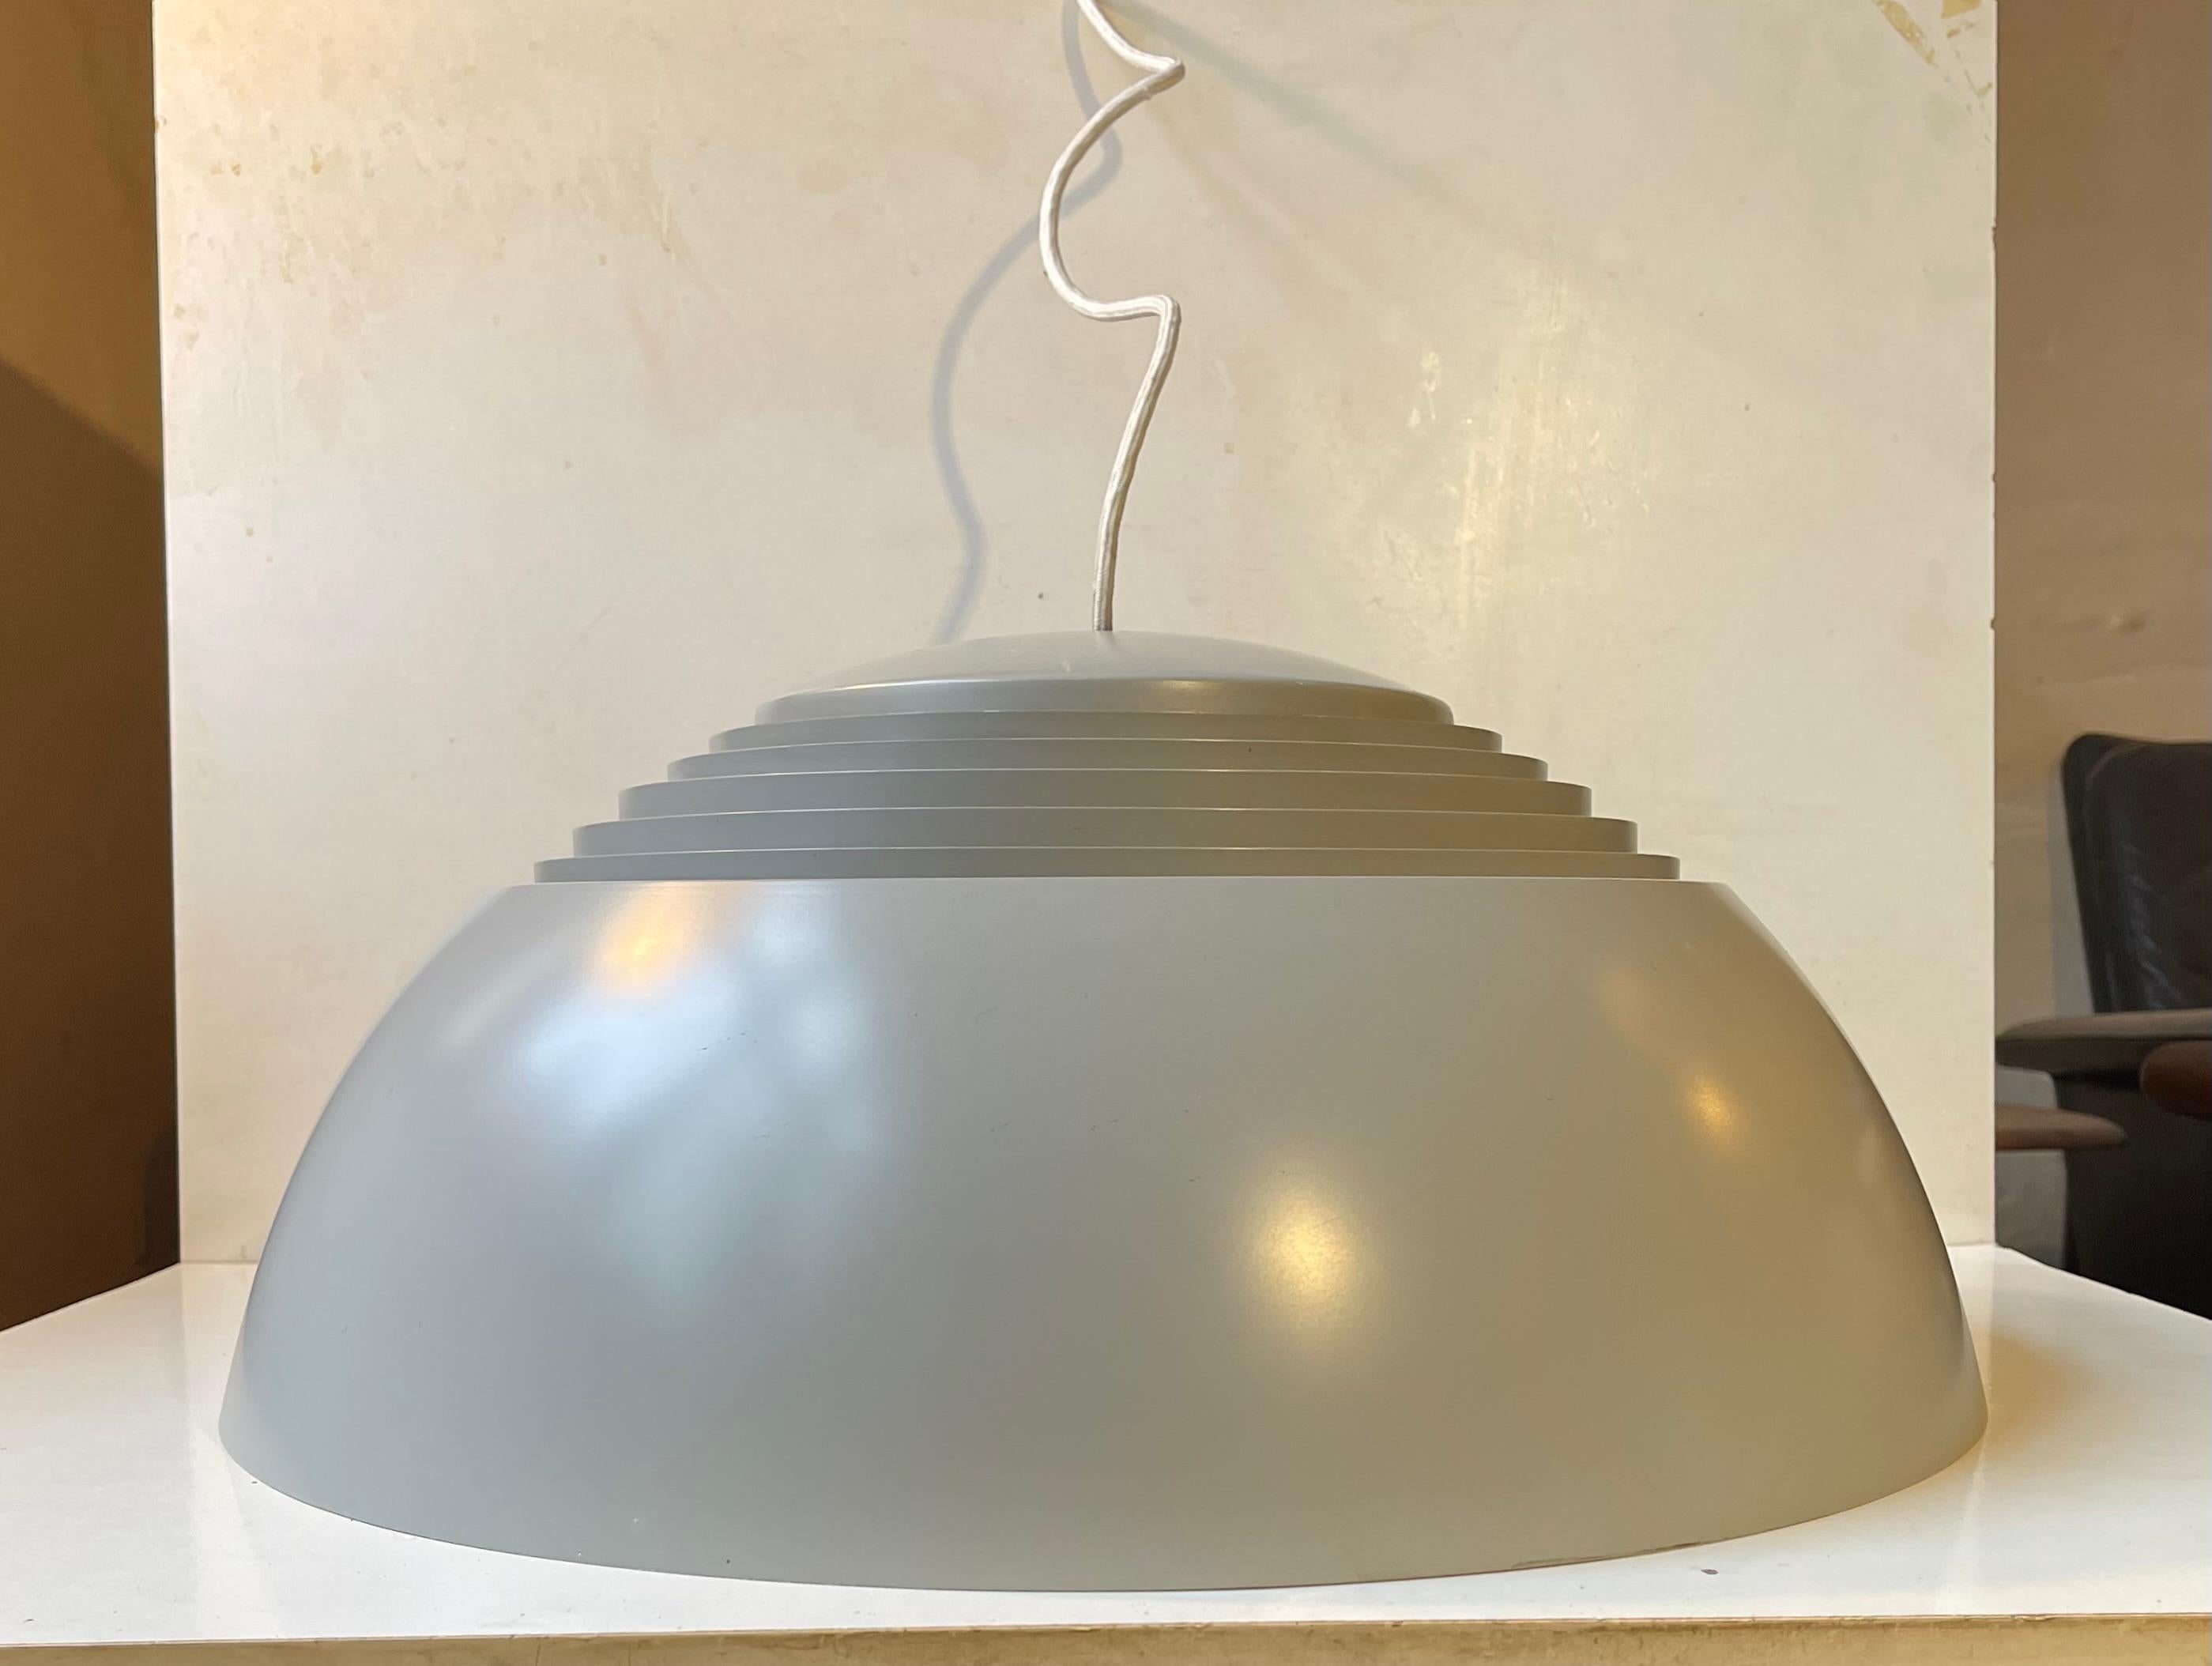 Une grande version de la lampe pendante AJ SAS Royal (50cm). Numéro de dessin 16554 conçu par Arne Jacobsen en 1957 pour l'hôtel Royal Blue SAS à Copenhague. Cet exemplaire particulier, dans sa laque d'origine gris éléphant, a conservé ses 4 prises